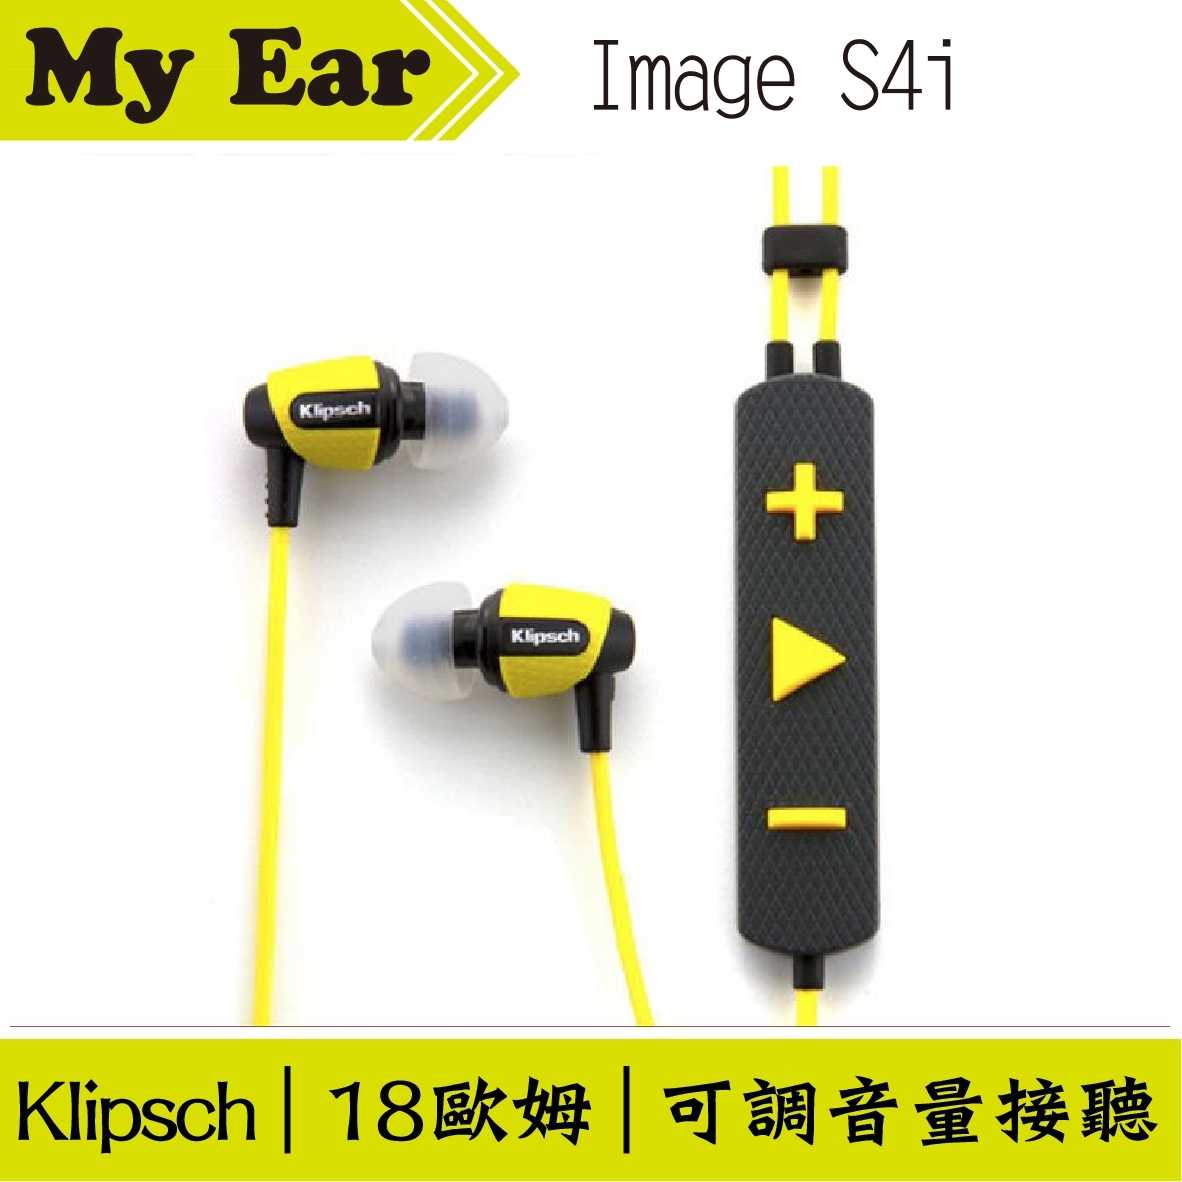 古力奇 Klipsch S4i Rugged 黃色 運動款 My Ear 台中耳機專賣店